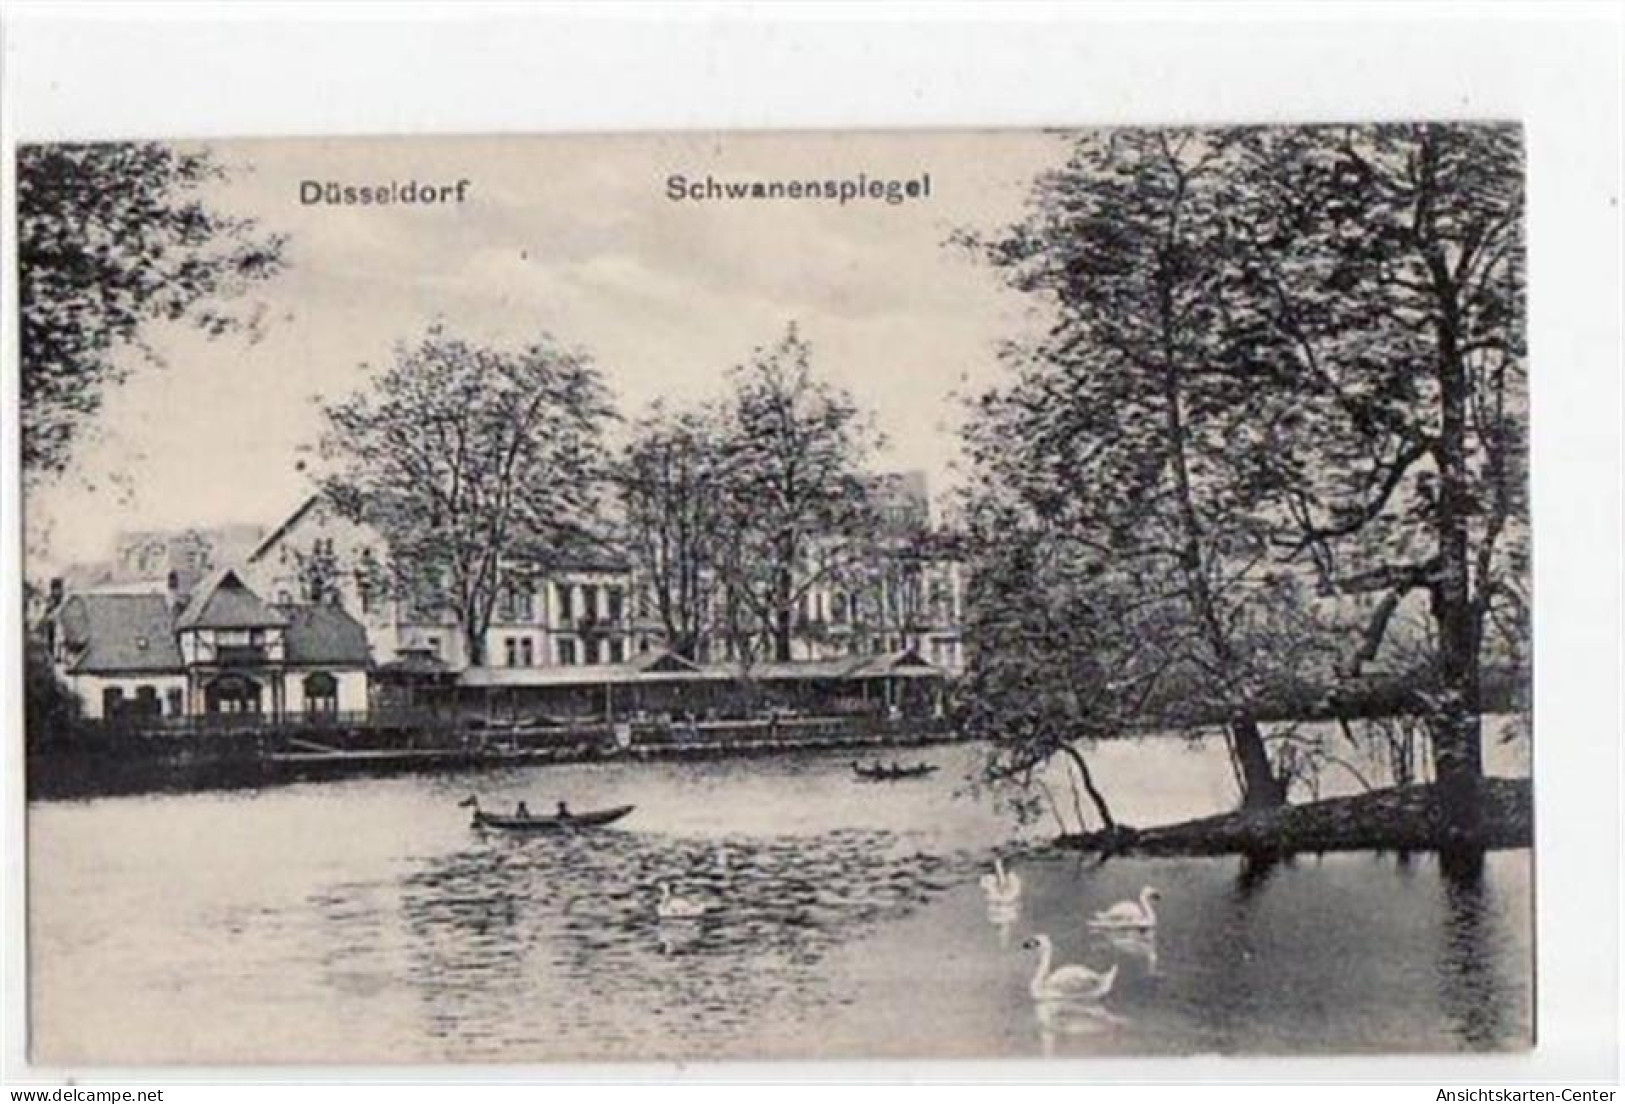 39059106 - Duesseldorf Mit Schwanenspiegel. Feldpost, Mit Stempel Von 1916. Gute Erhaltung. - Düsseldorf